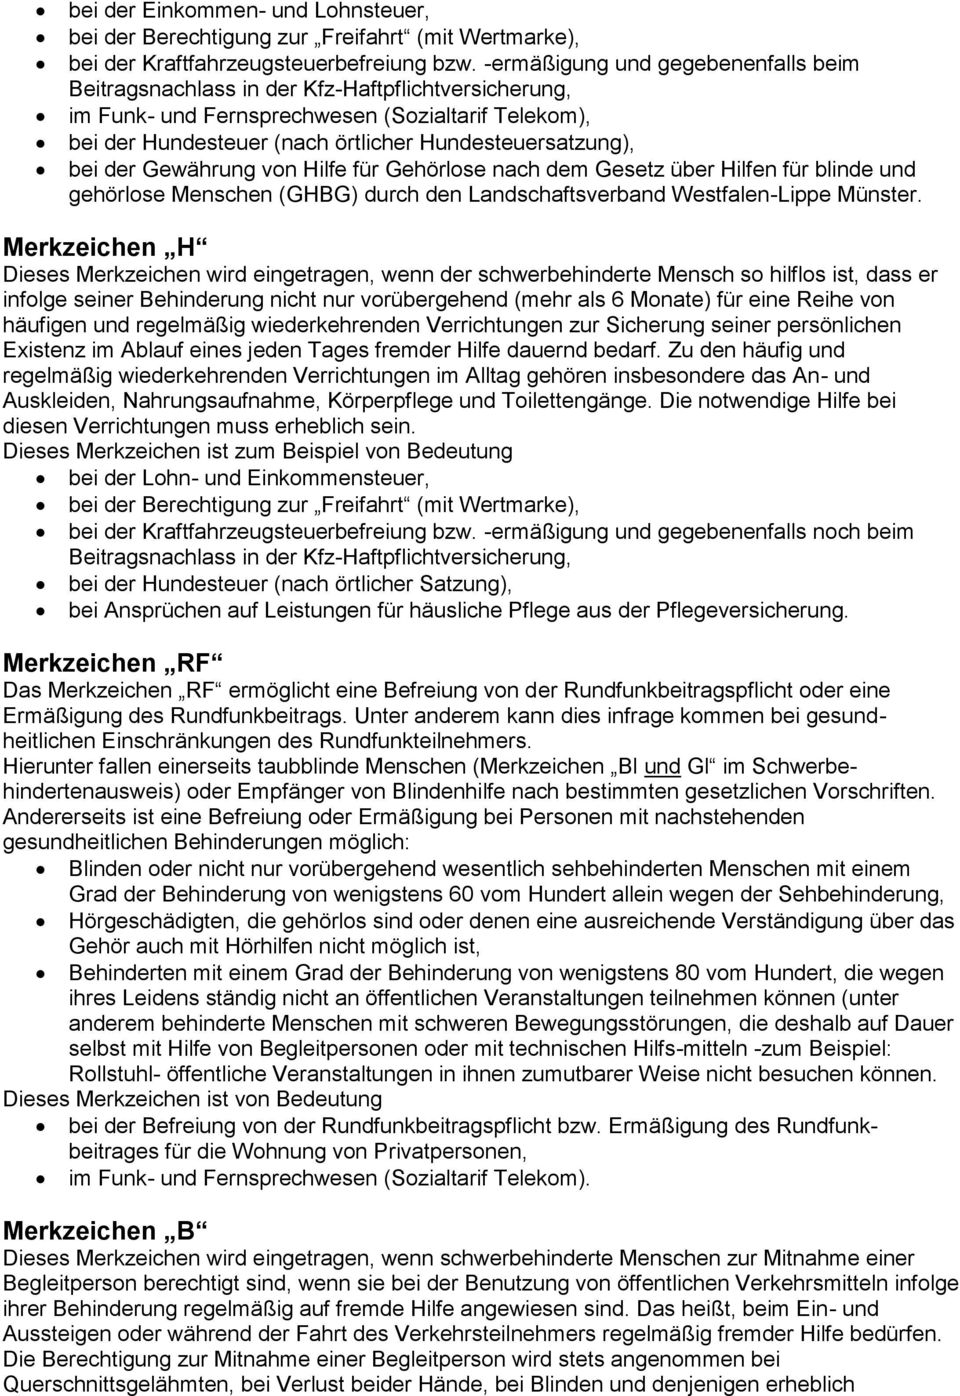 Gesetz über Hilfen für blinde und gehörlose Menschen (GHBG) durch den Landschaftsverband Westfalen-Lippe Münster.